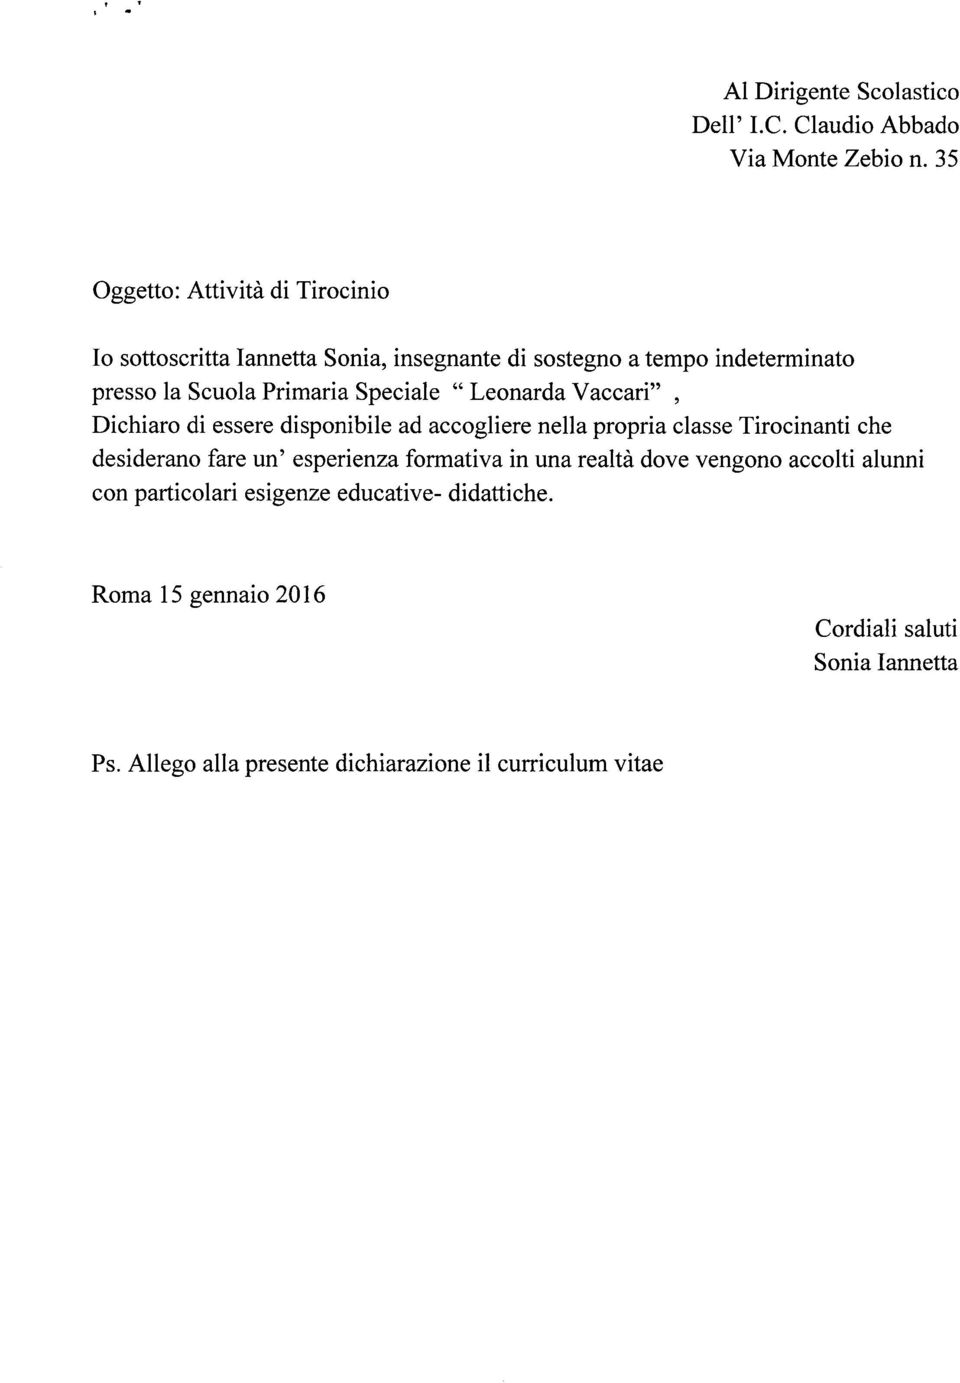 Speciale "Leonarda Vaccari", Dichiaro di essere disponibile ad accogliere nella propria classe Tirocinanti che desiderano fare un'